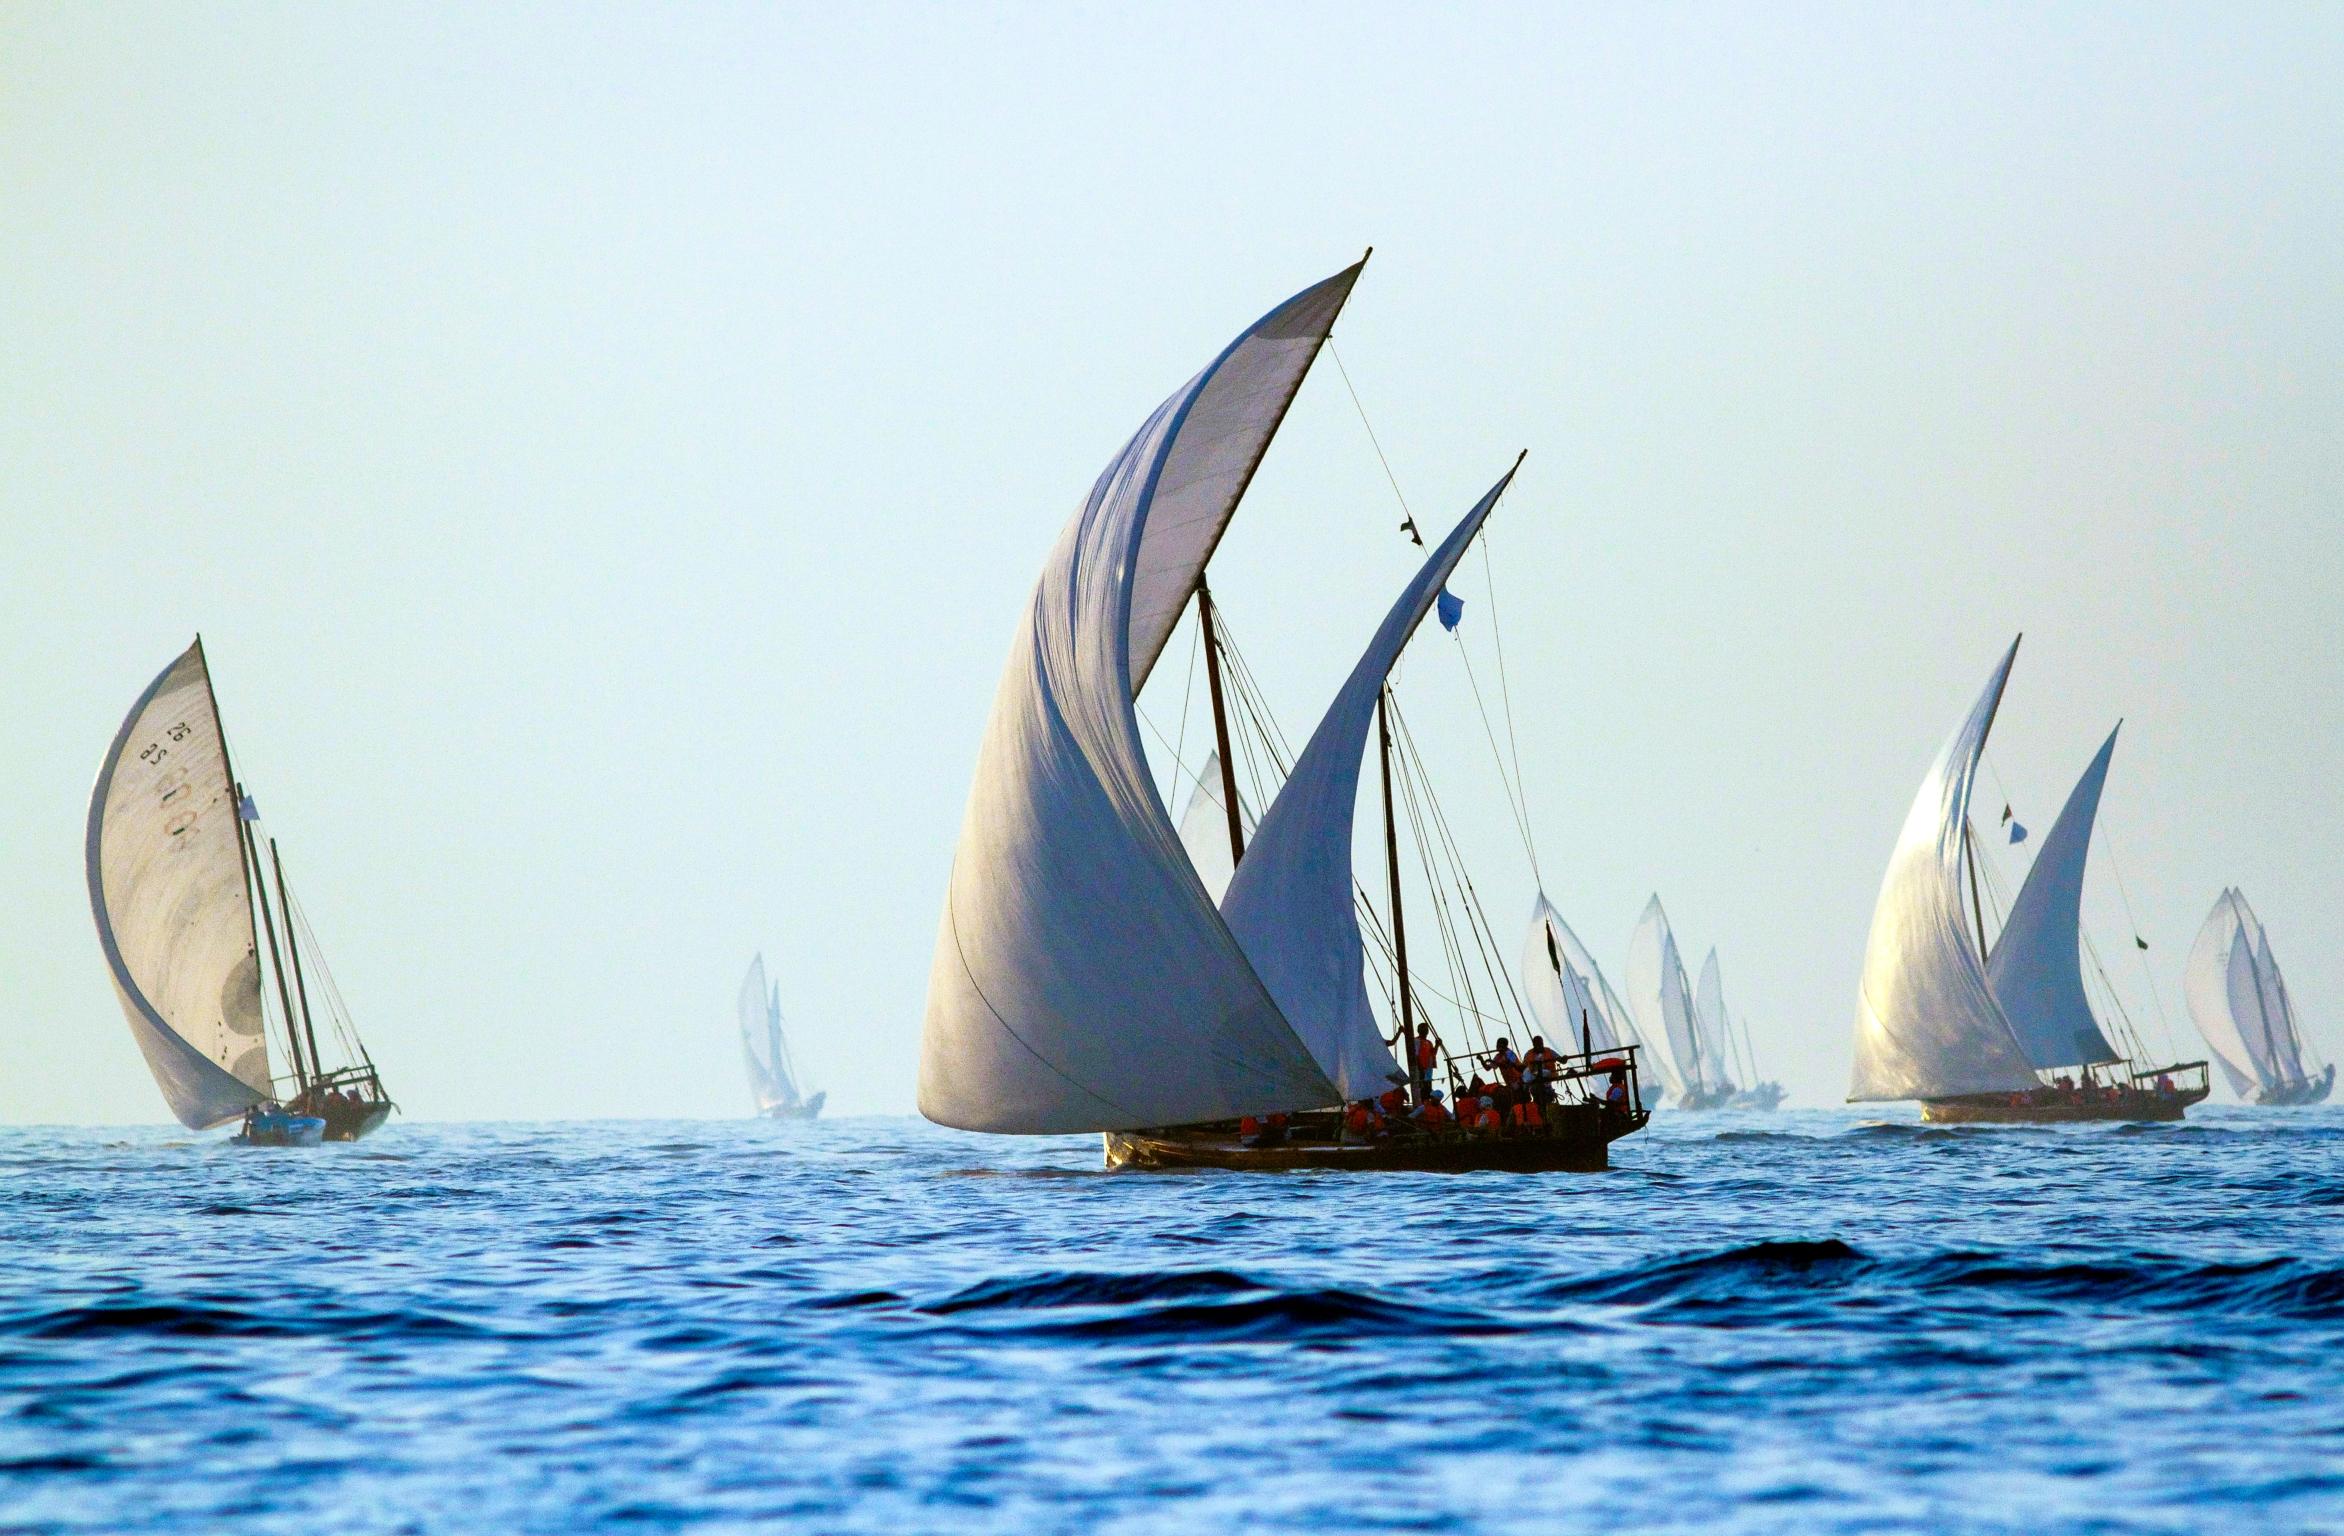 Inspiration
Die Dhow-Möbel sind eine Anspielung auf die geblähten Segel der traditionellen omanischen Boote, die ein wichtiger Teil der maritimen Geschichte des Landes sind.

Handwerkskunst
Bethan hat die Bewegung der Segel in einem